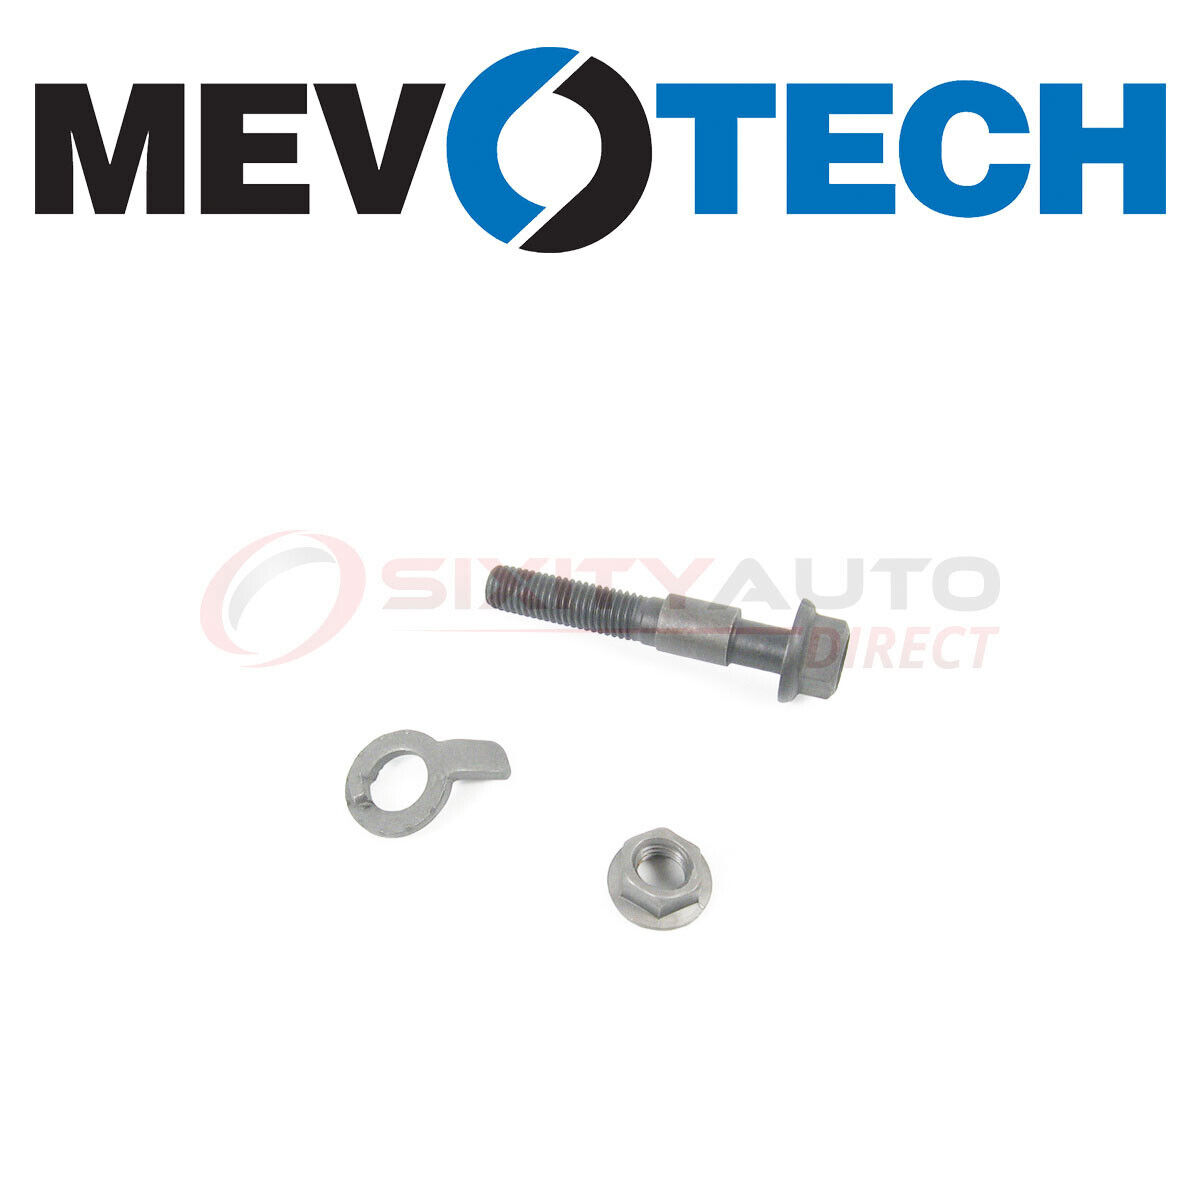 Mevotech Alignment Camber Kit for 1995 Mazda MX-6 2.5L V6 - Wheels Tires io